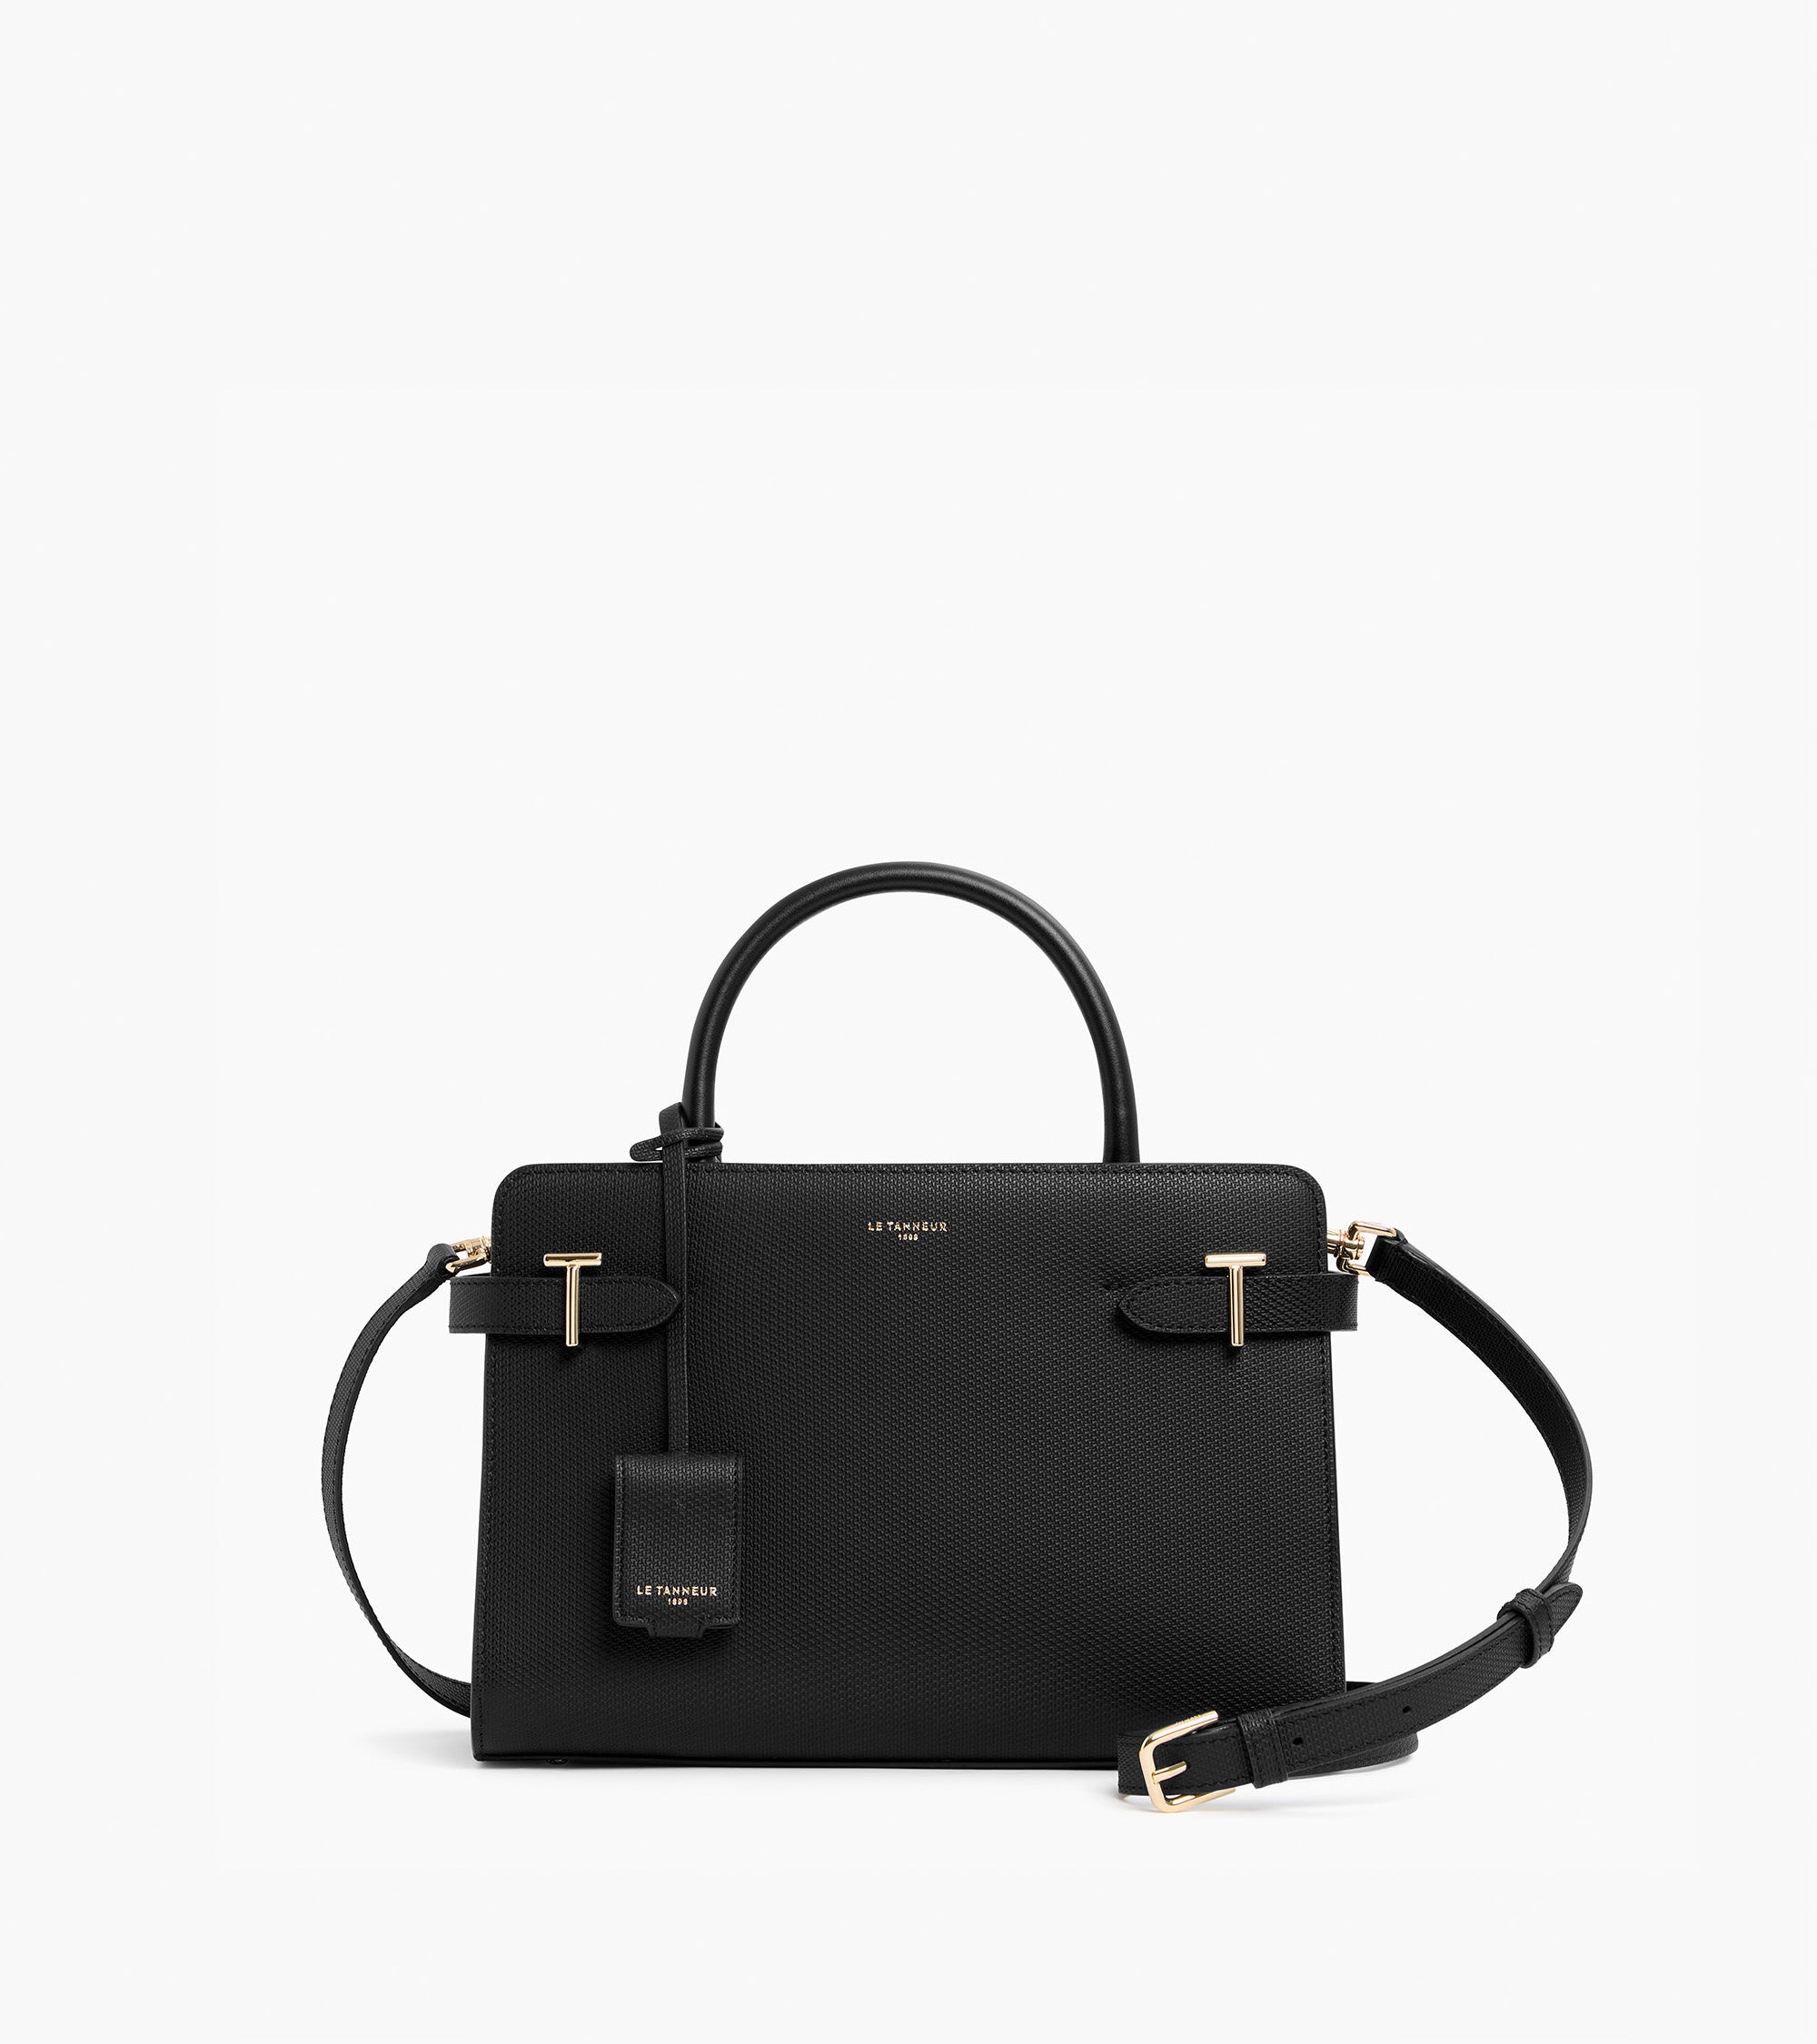 Medium Emilie T signature leather handbag